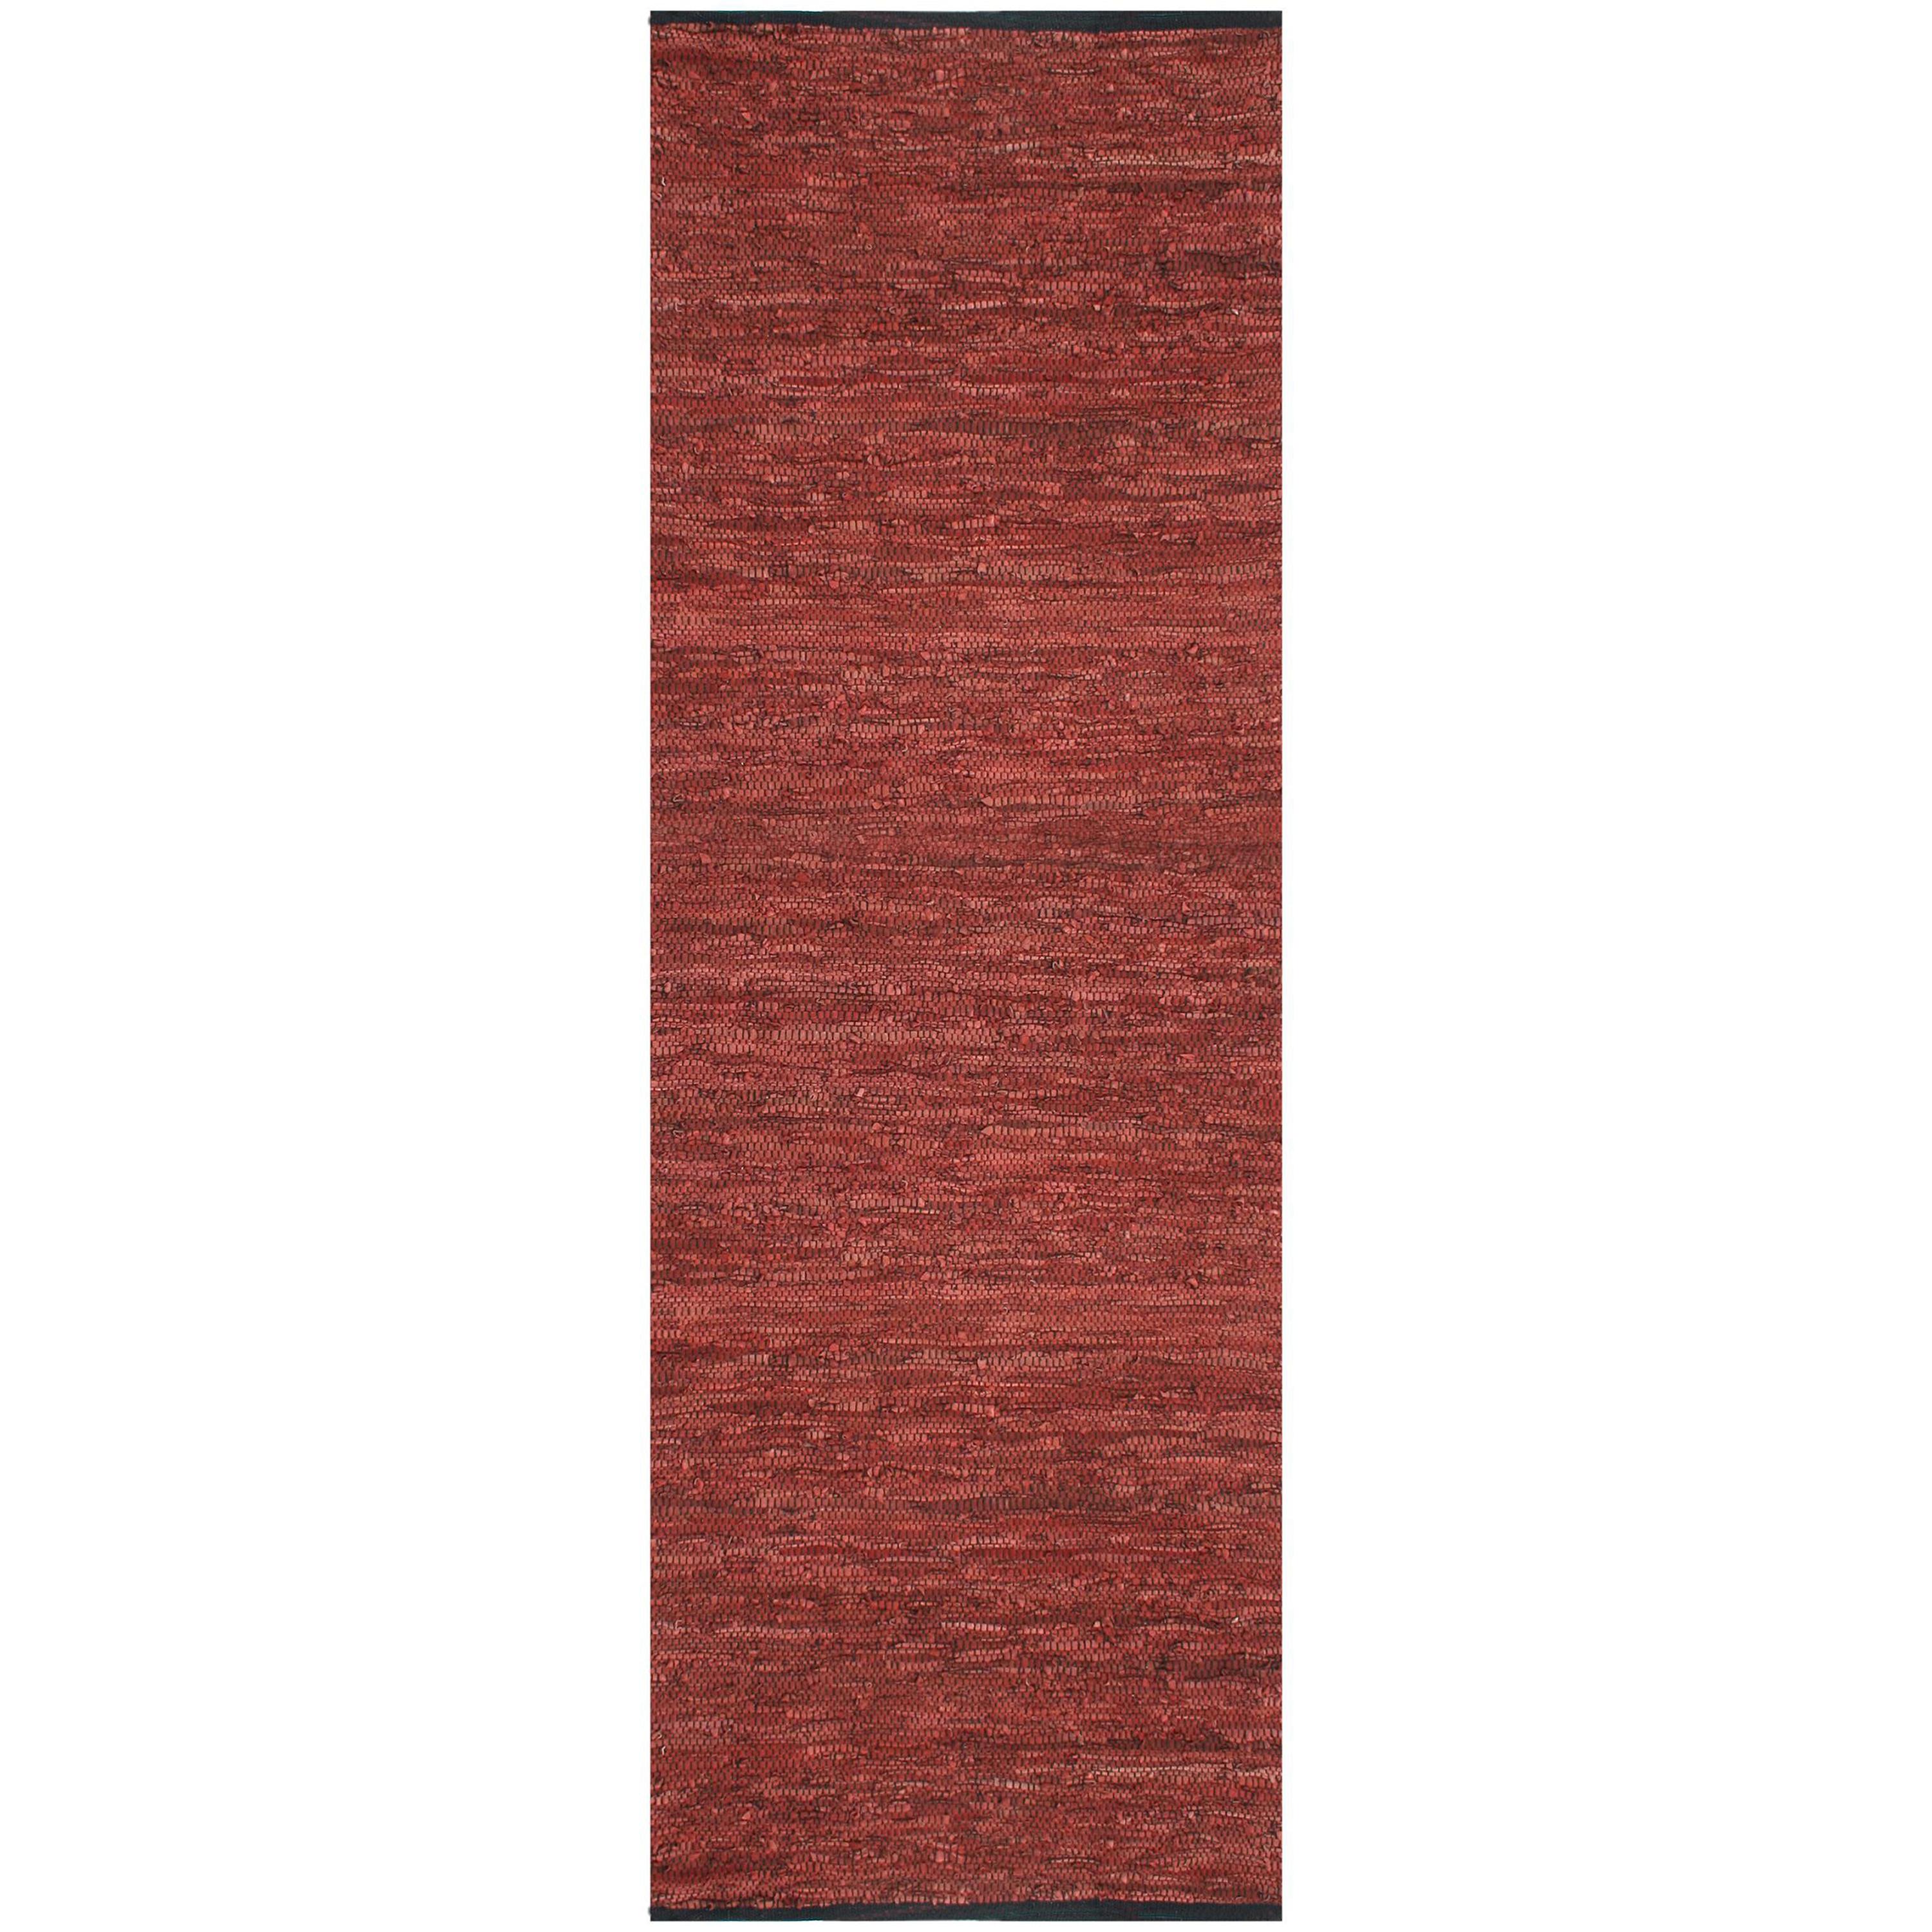 Hand woven Matador Copper Leather Rug (26 X 12)